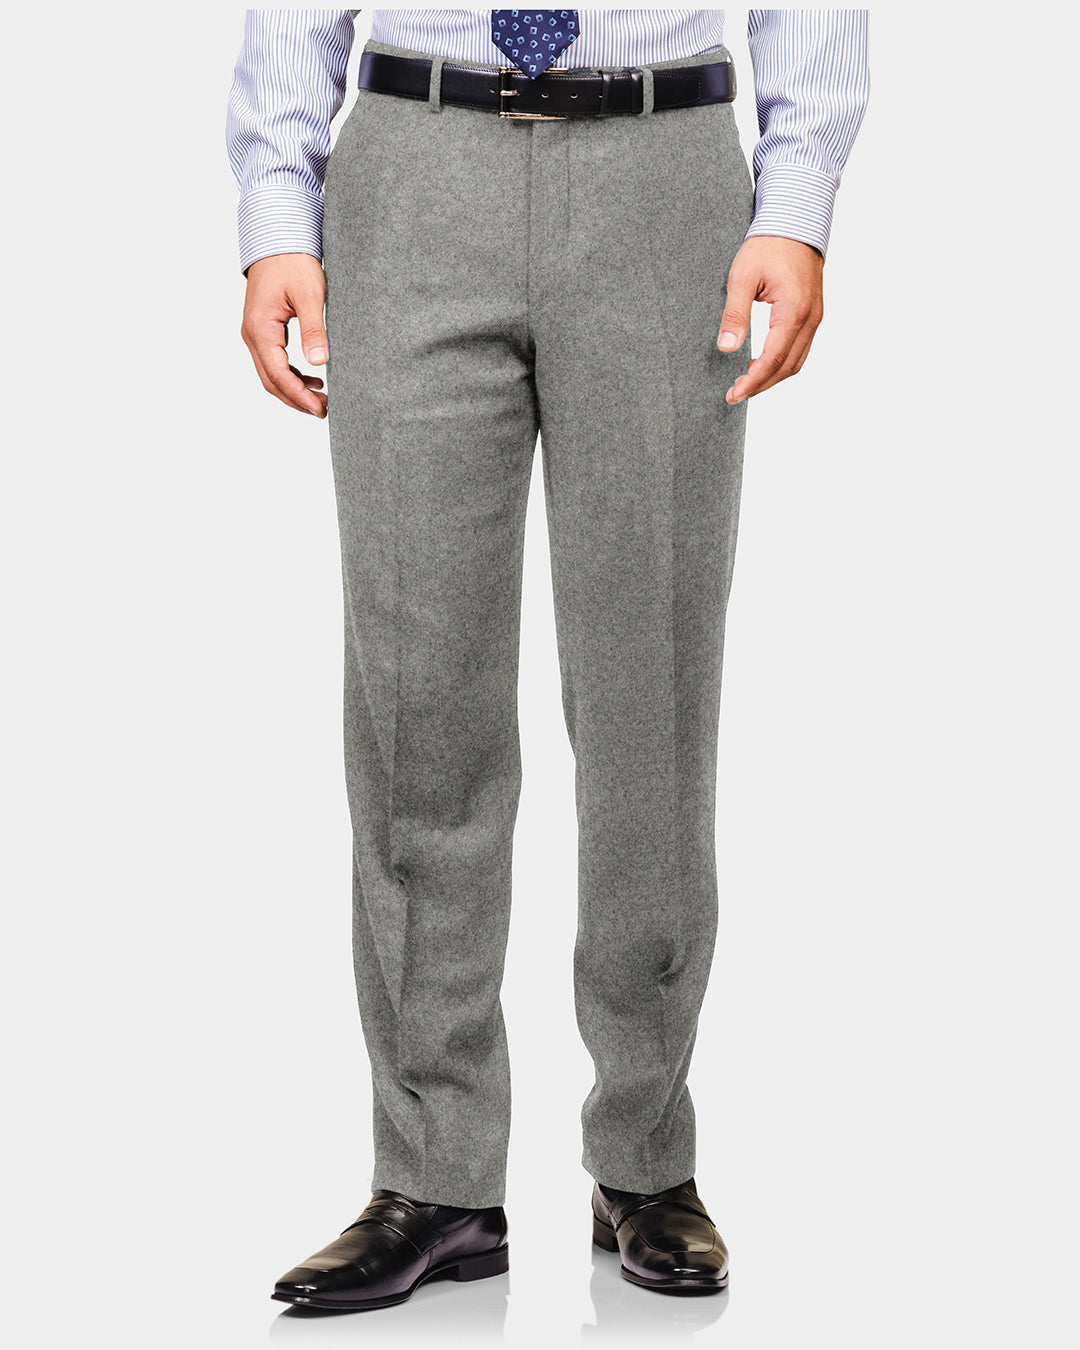 Minnis Flannel: Light Grey Twill Pants